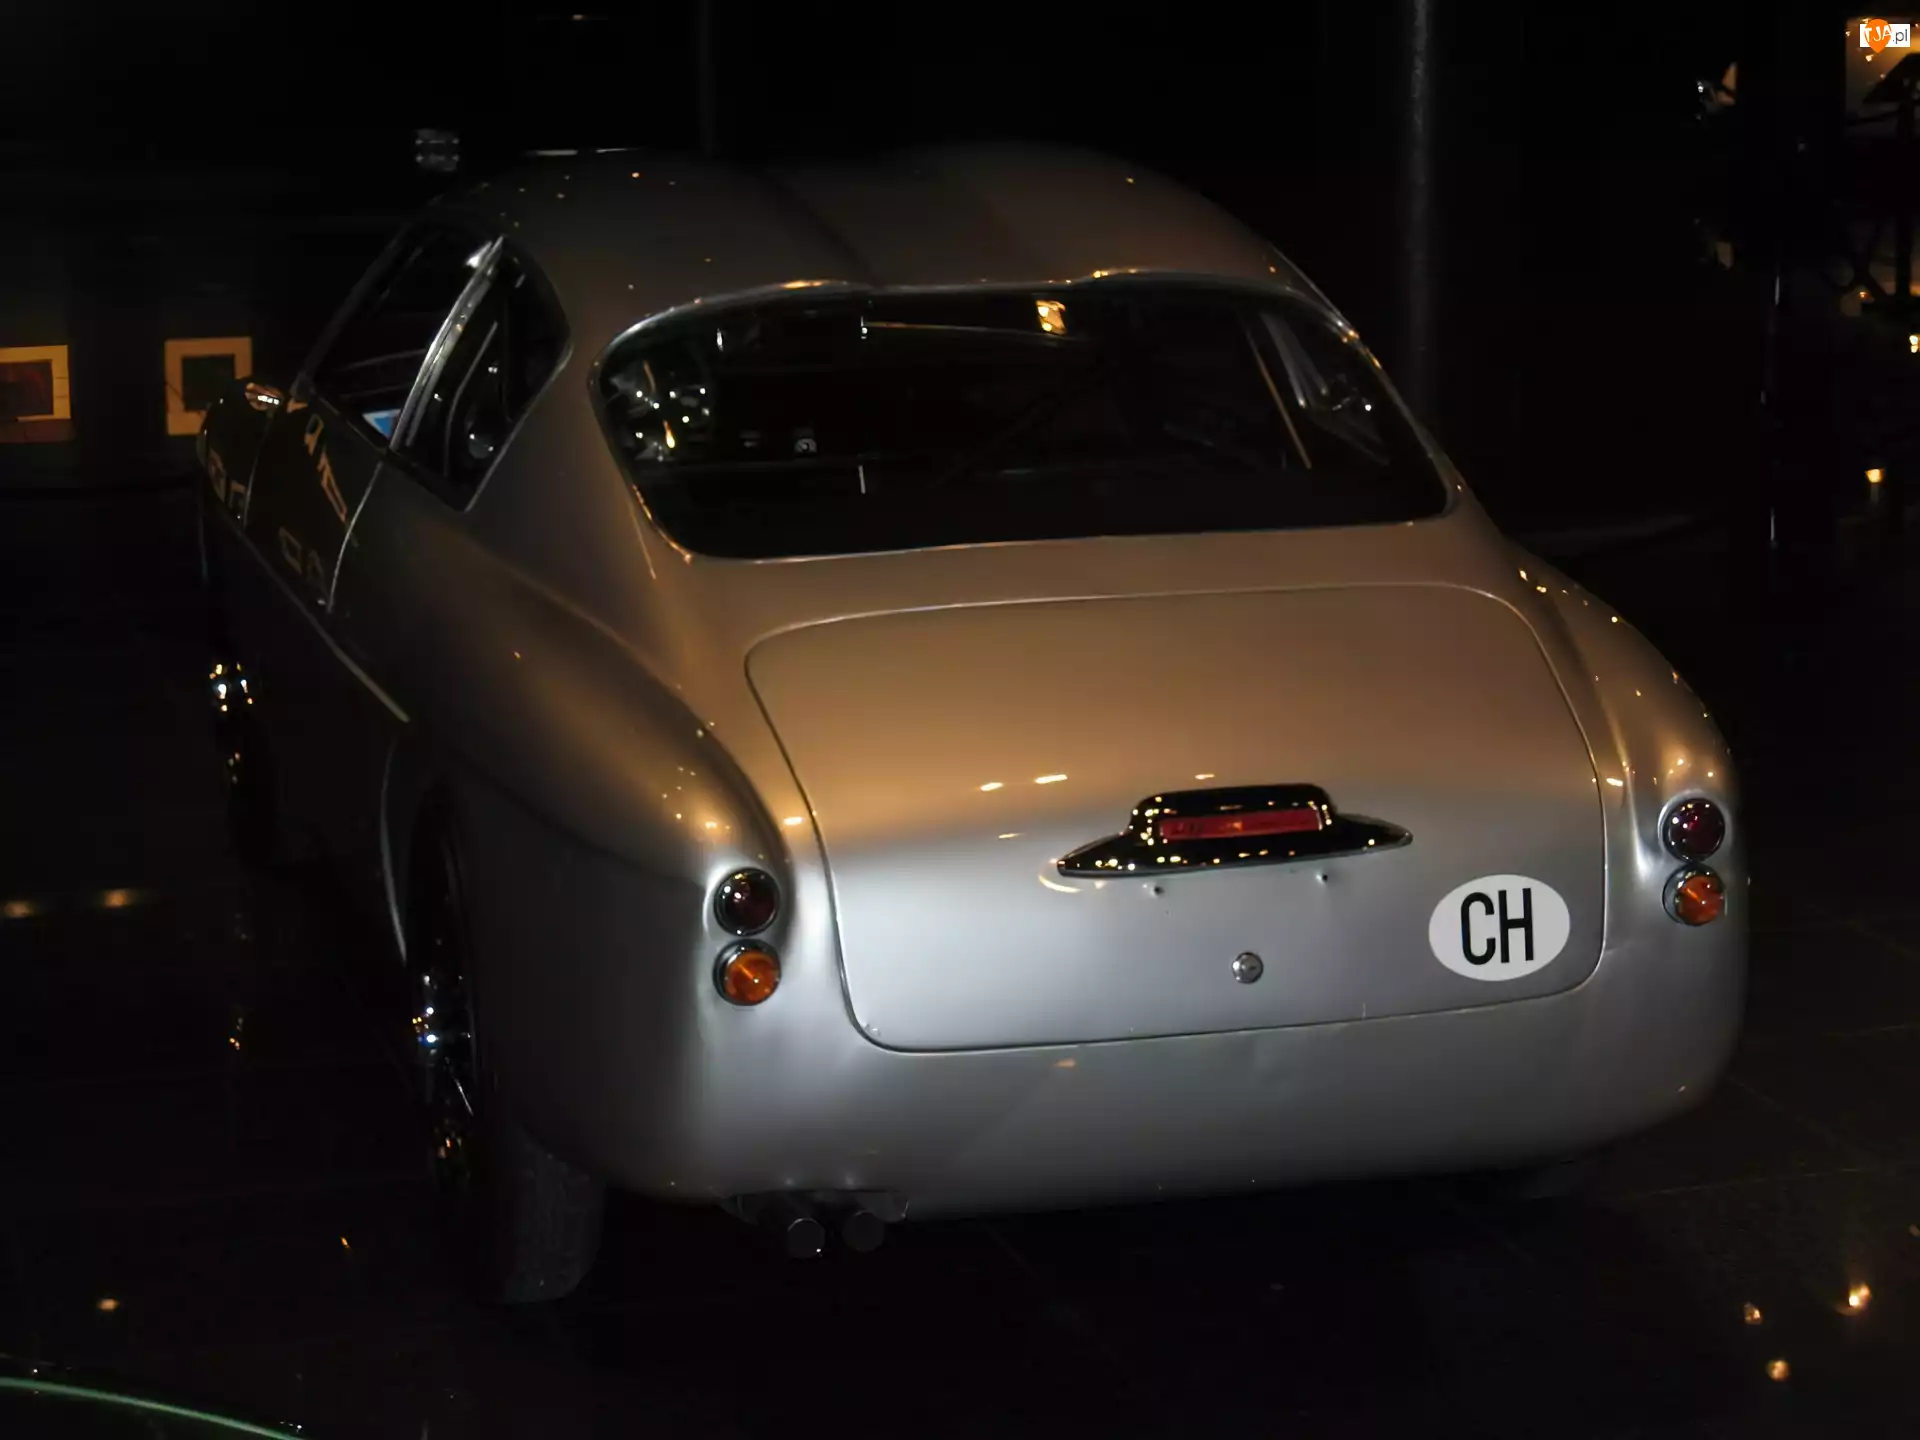 Alfa Romeo, bagażnik